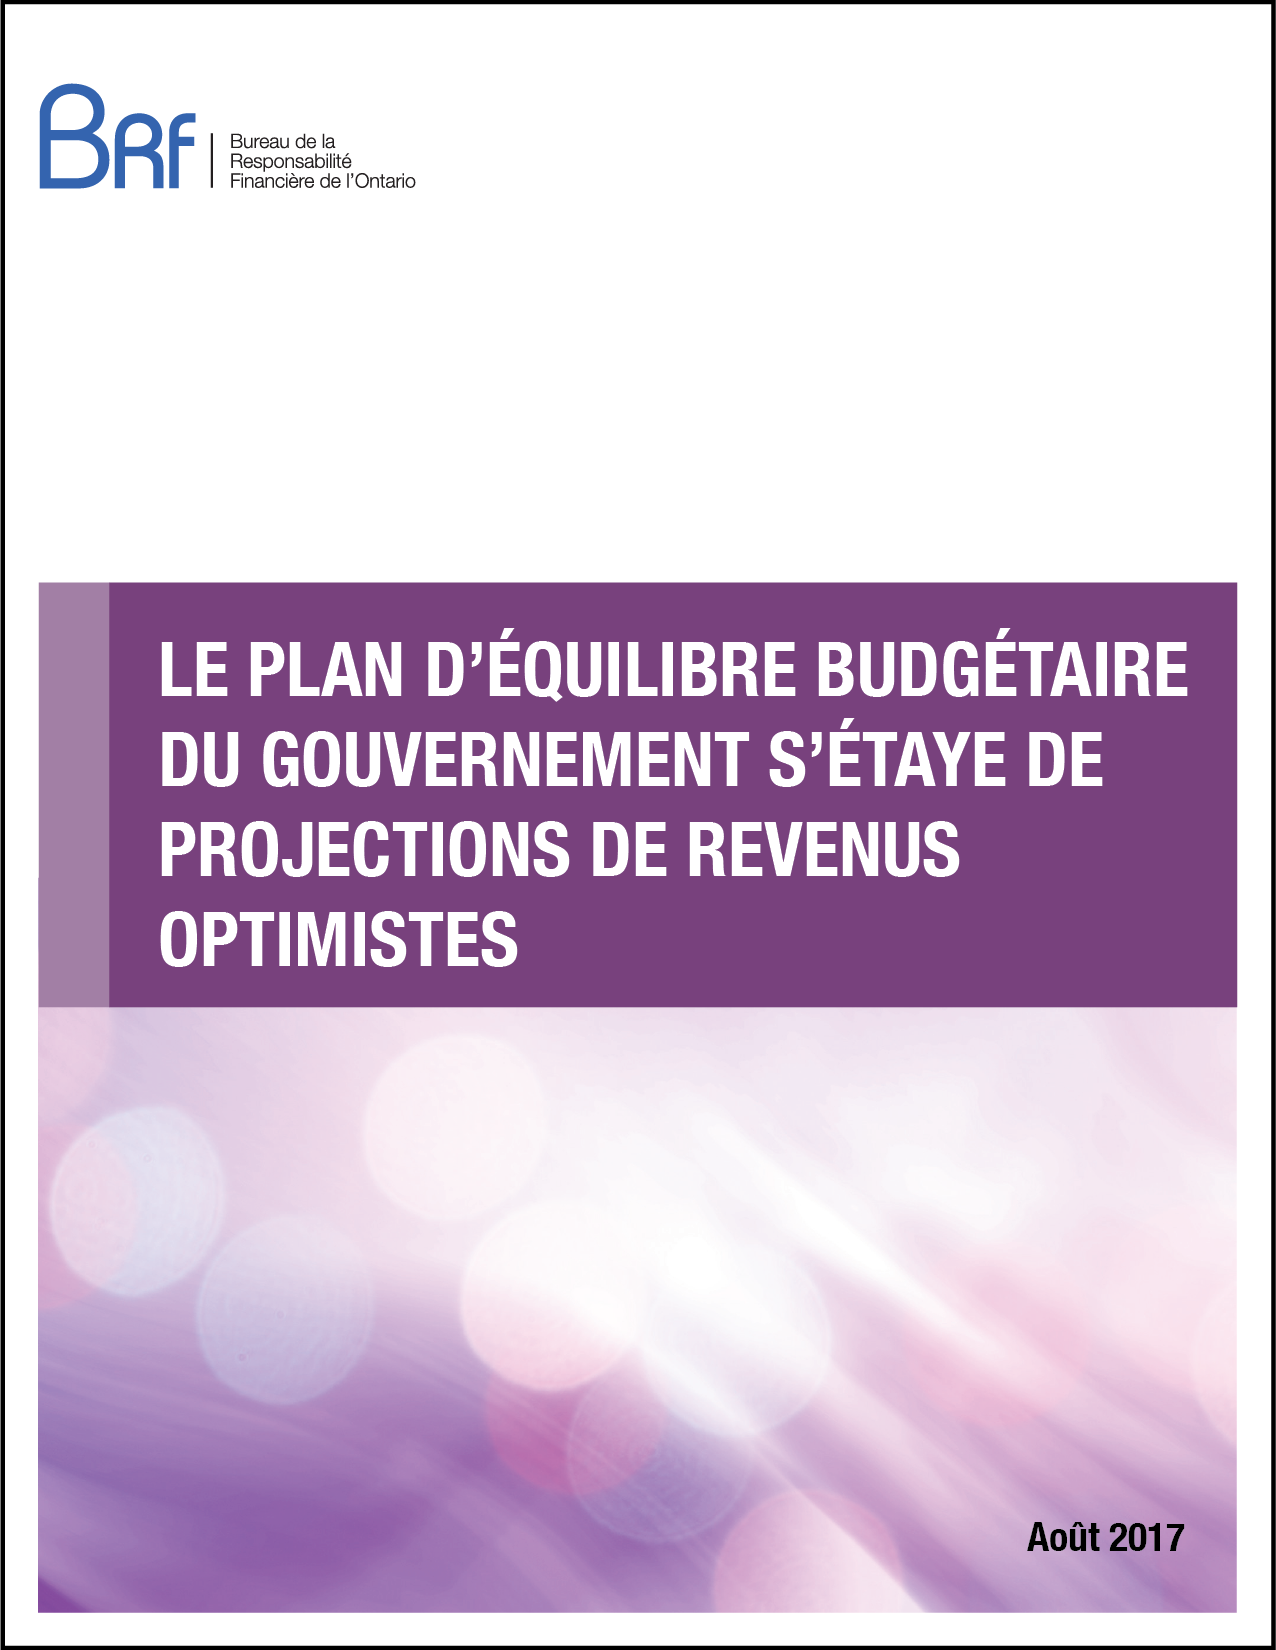 Le plan d’équilibre budgétaire du gouvernement s’étaye de projections de revenus optimistes